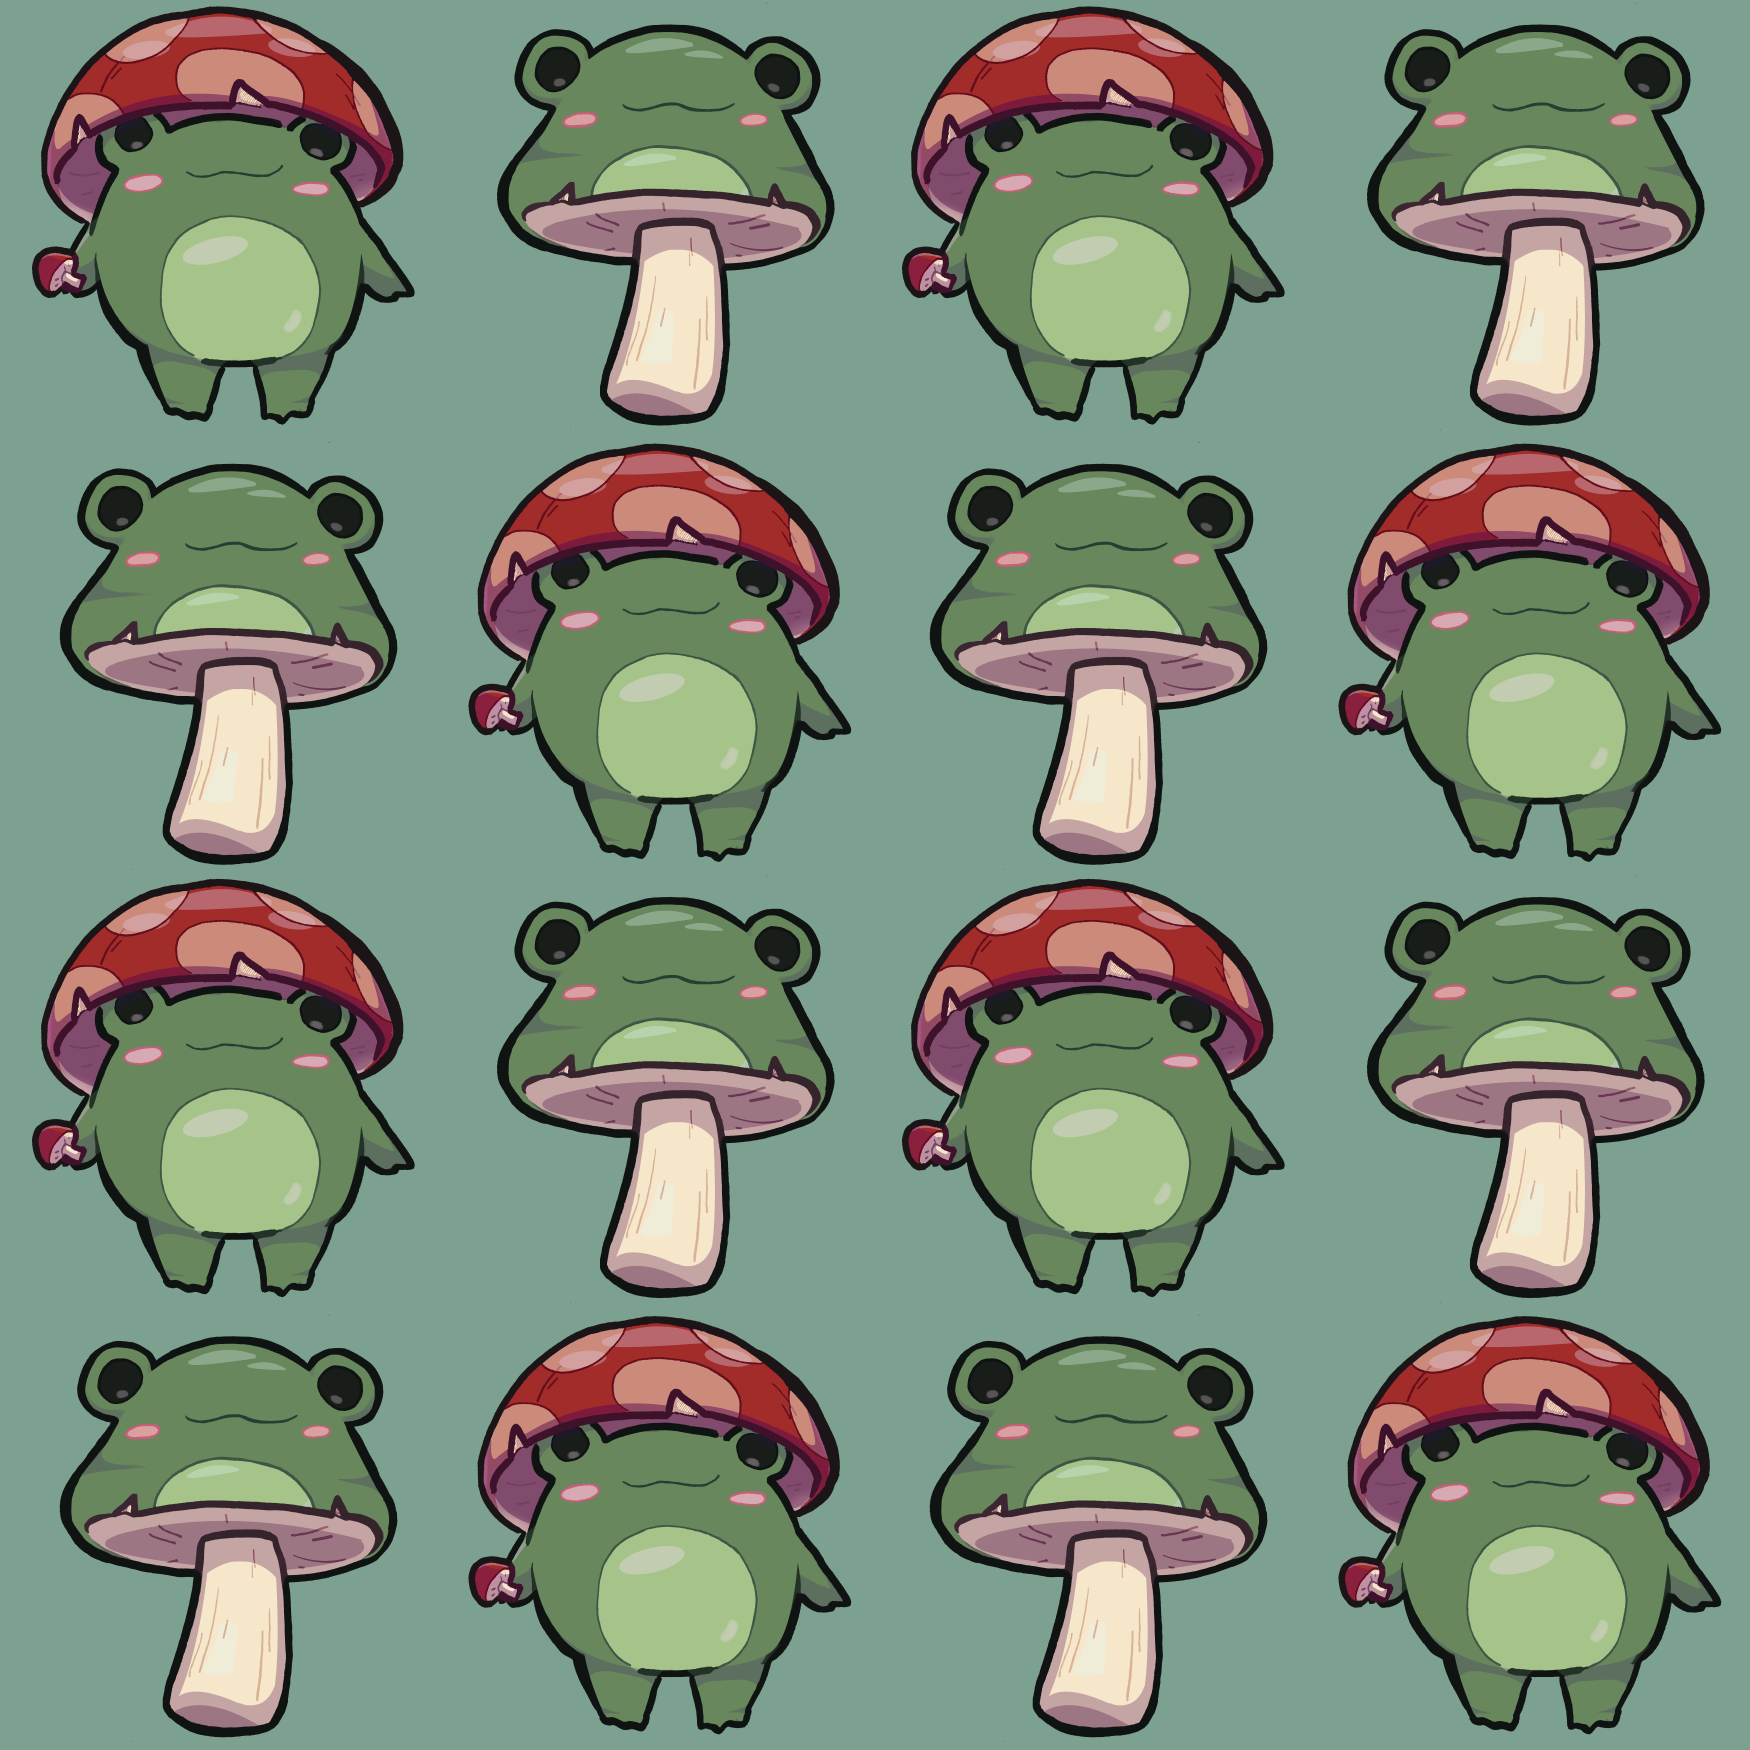 100 Aesthetic Frog Wallpapers  Wallpaperscom